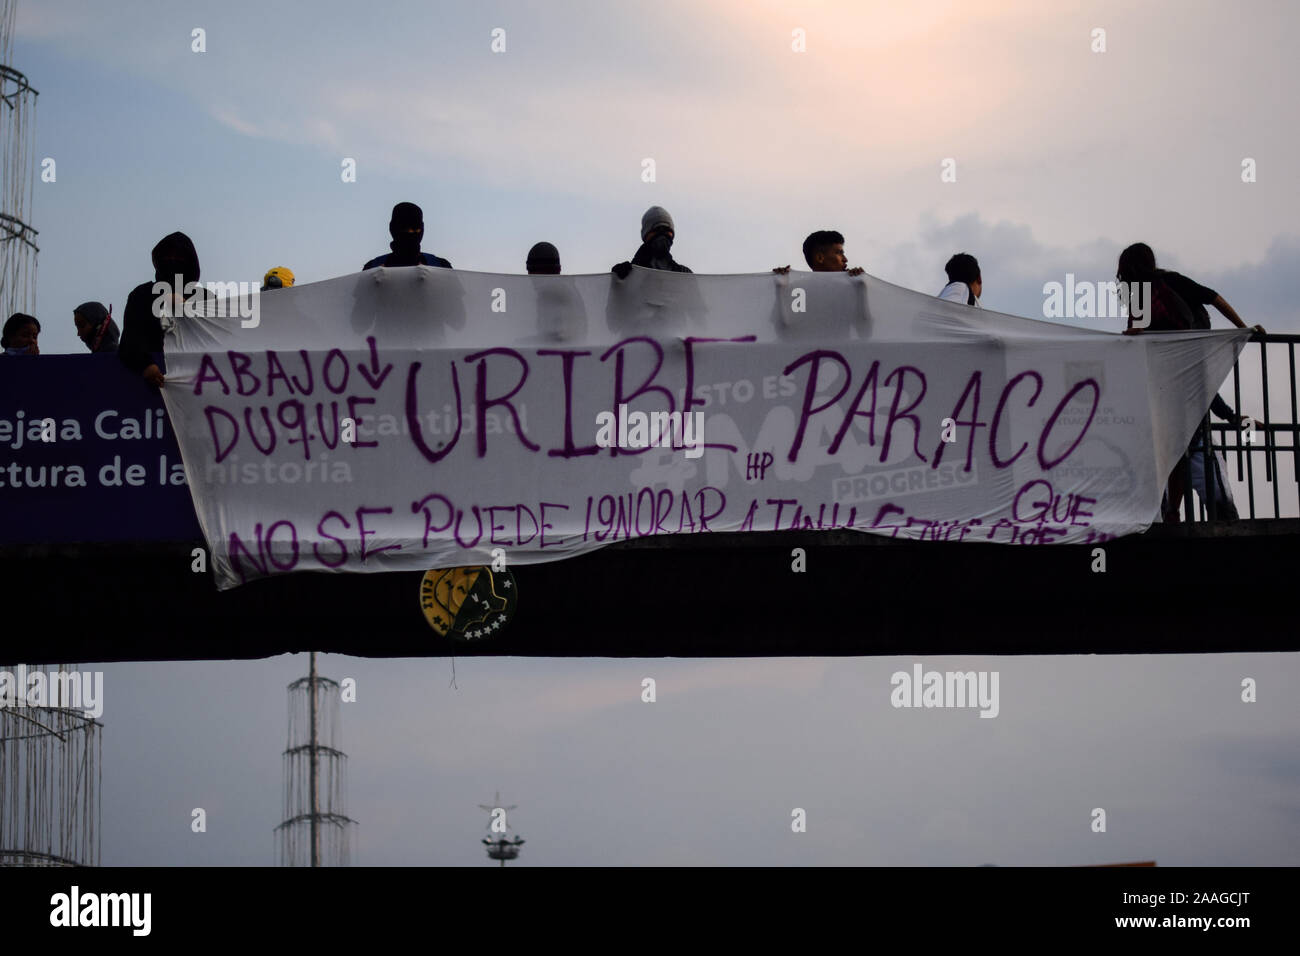 "Paro Nacional'März in Cali, Kolumbien, Donnerstag, November 21, 2019. Kolumbien main Union Gruppen und studentischen Aktivisten für einen Streik aufgerufen. Stockfoto